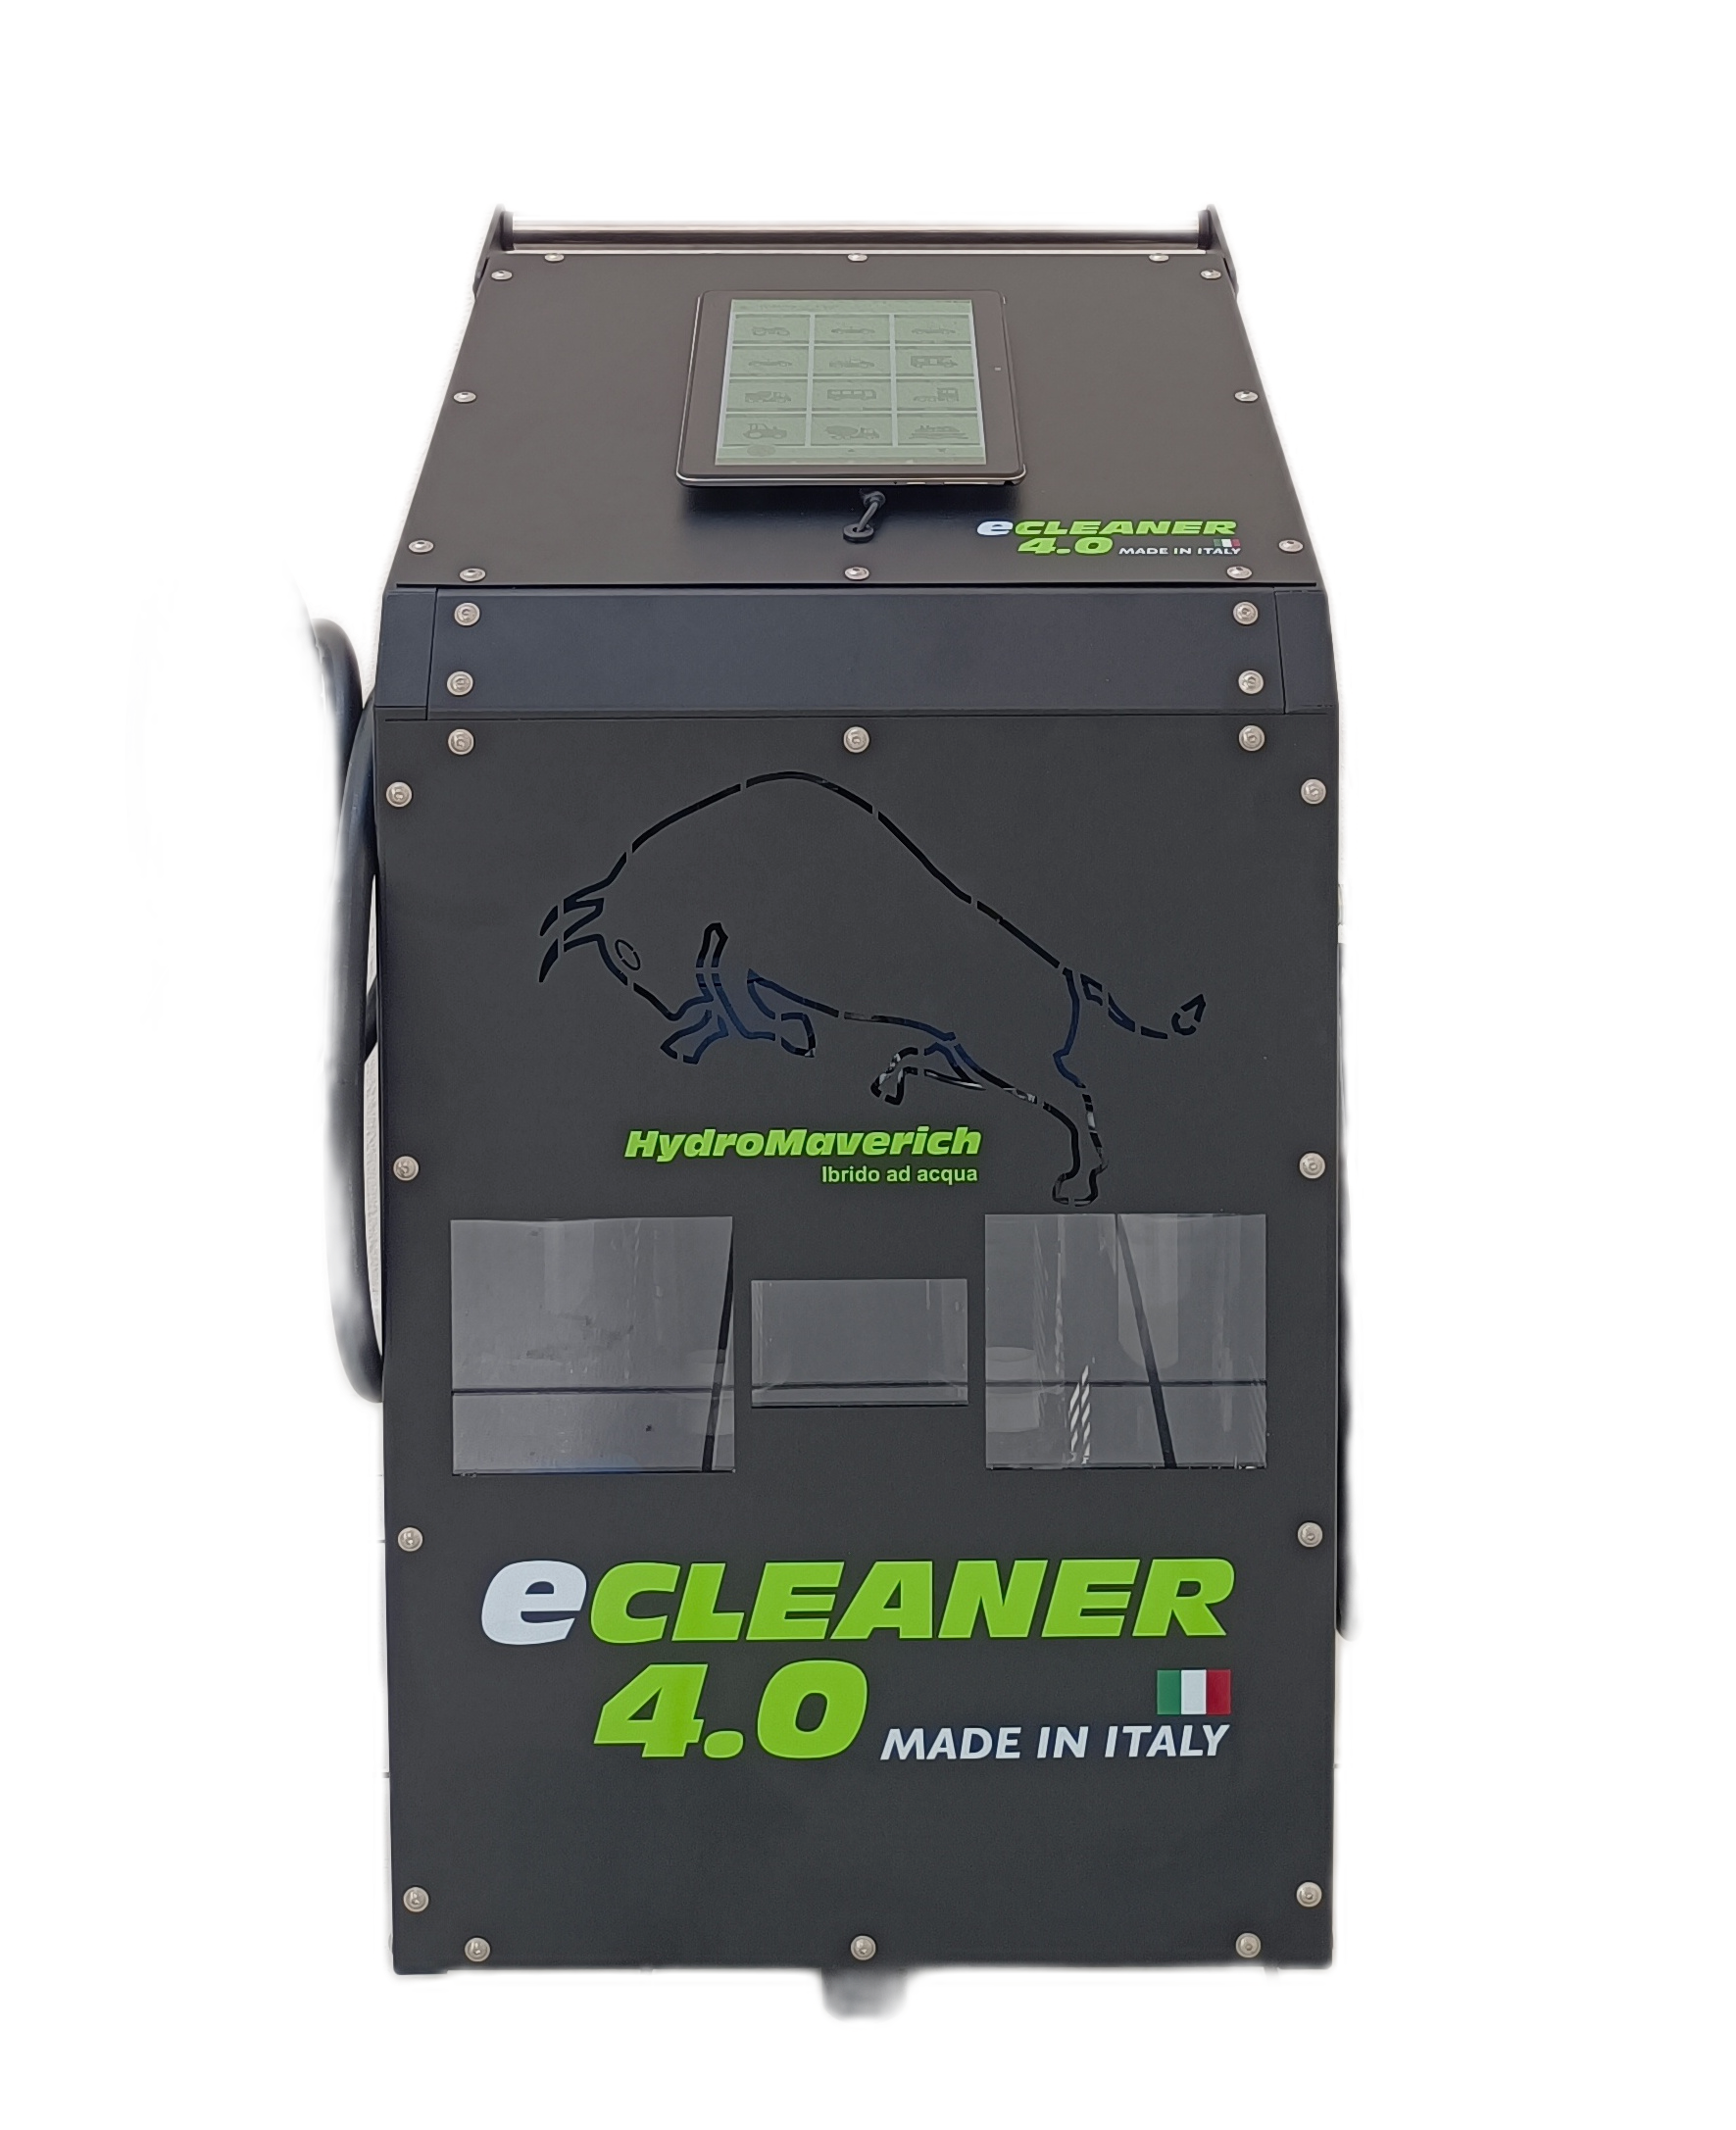 Hydromaverich Ecleaner 4.0 idrogeno Decarbonizzazione motore, pulizia motore con idrogeno, lavaggio motore, trattamento idrogeno